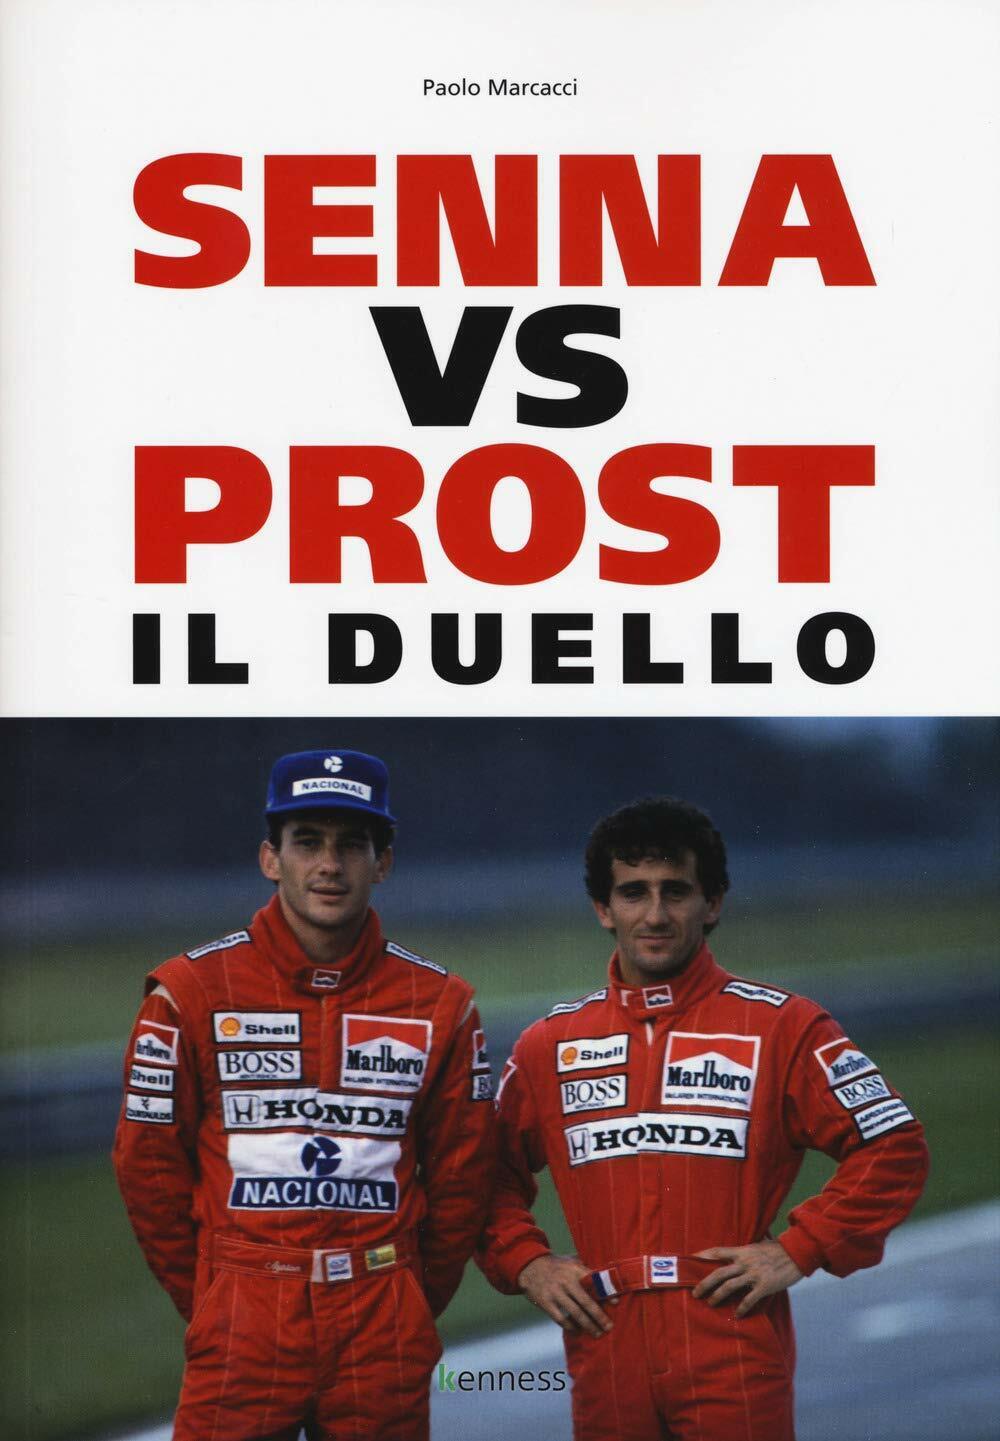 Senna vs Prost. Il duello - Paolo Marcacci - Kenness, 2019